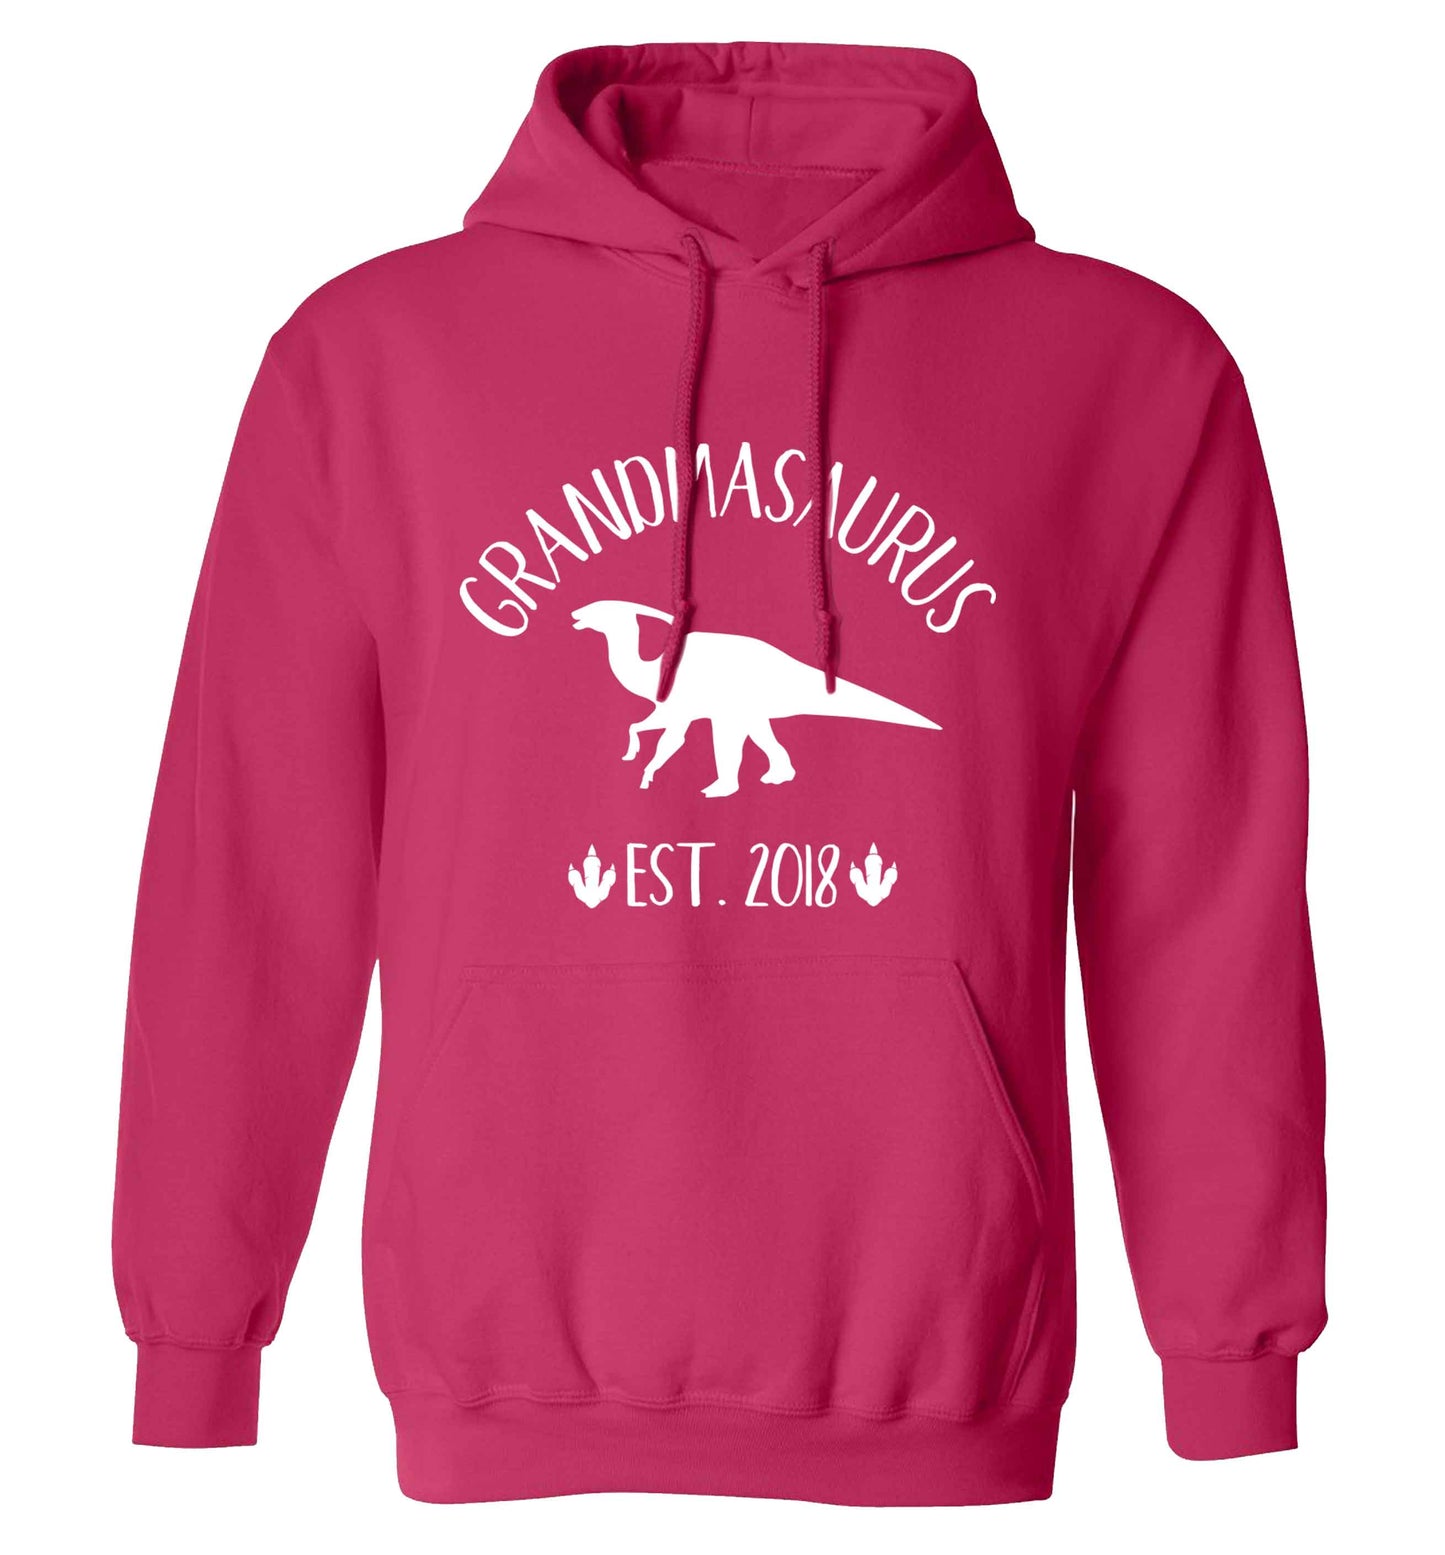 Personalised grandmasaurus since (custom date) adults unisex pink hoodie 2XL